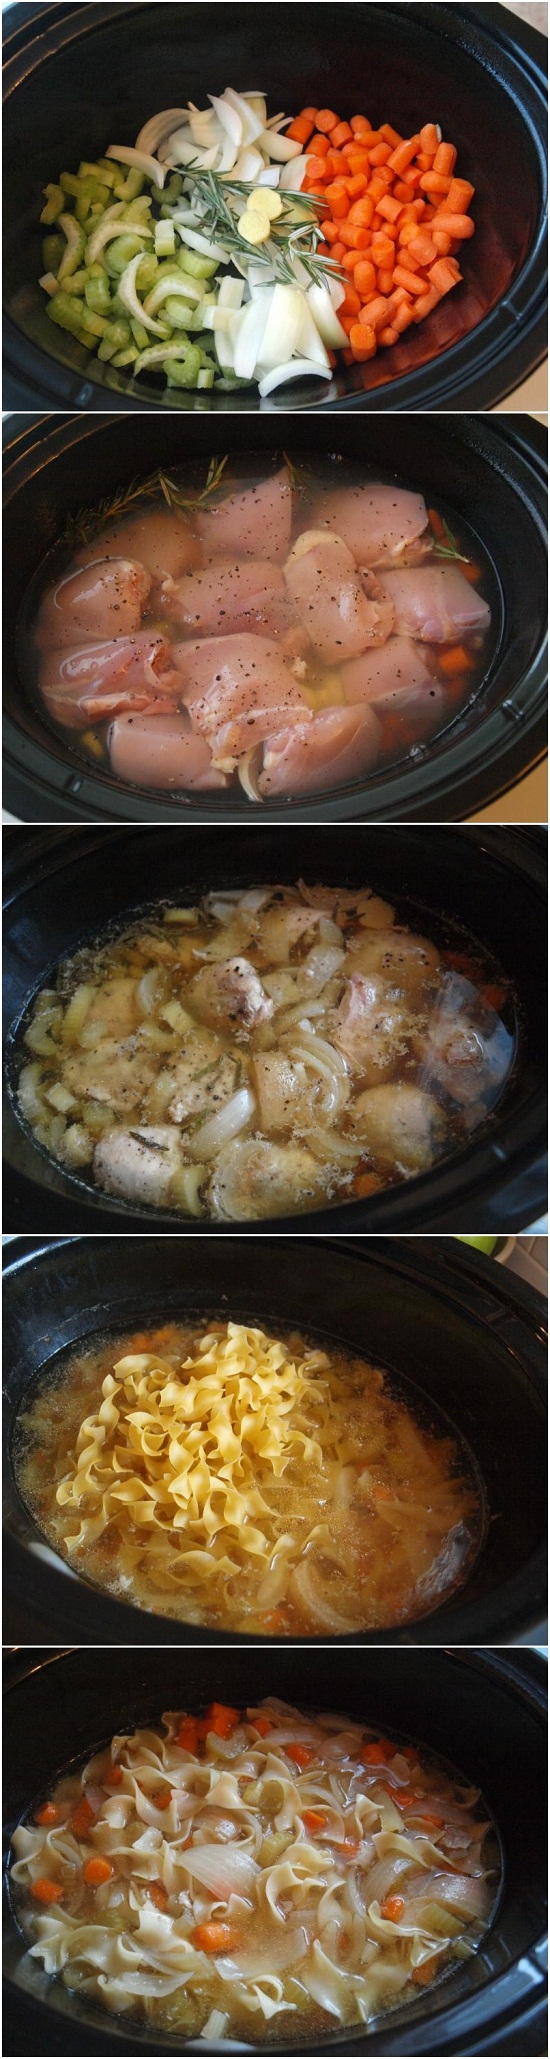 Crockpot Chicken Noodle Soup